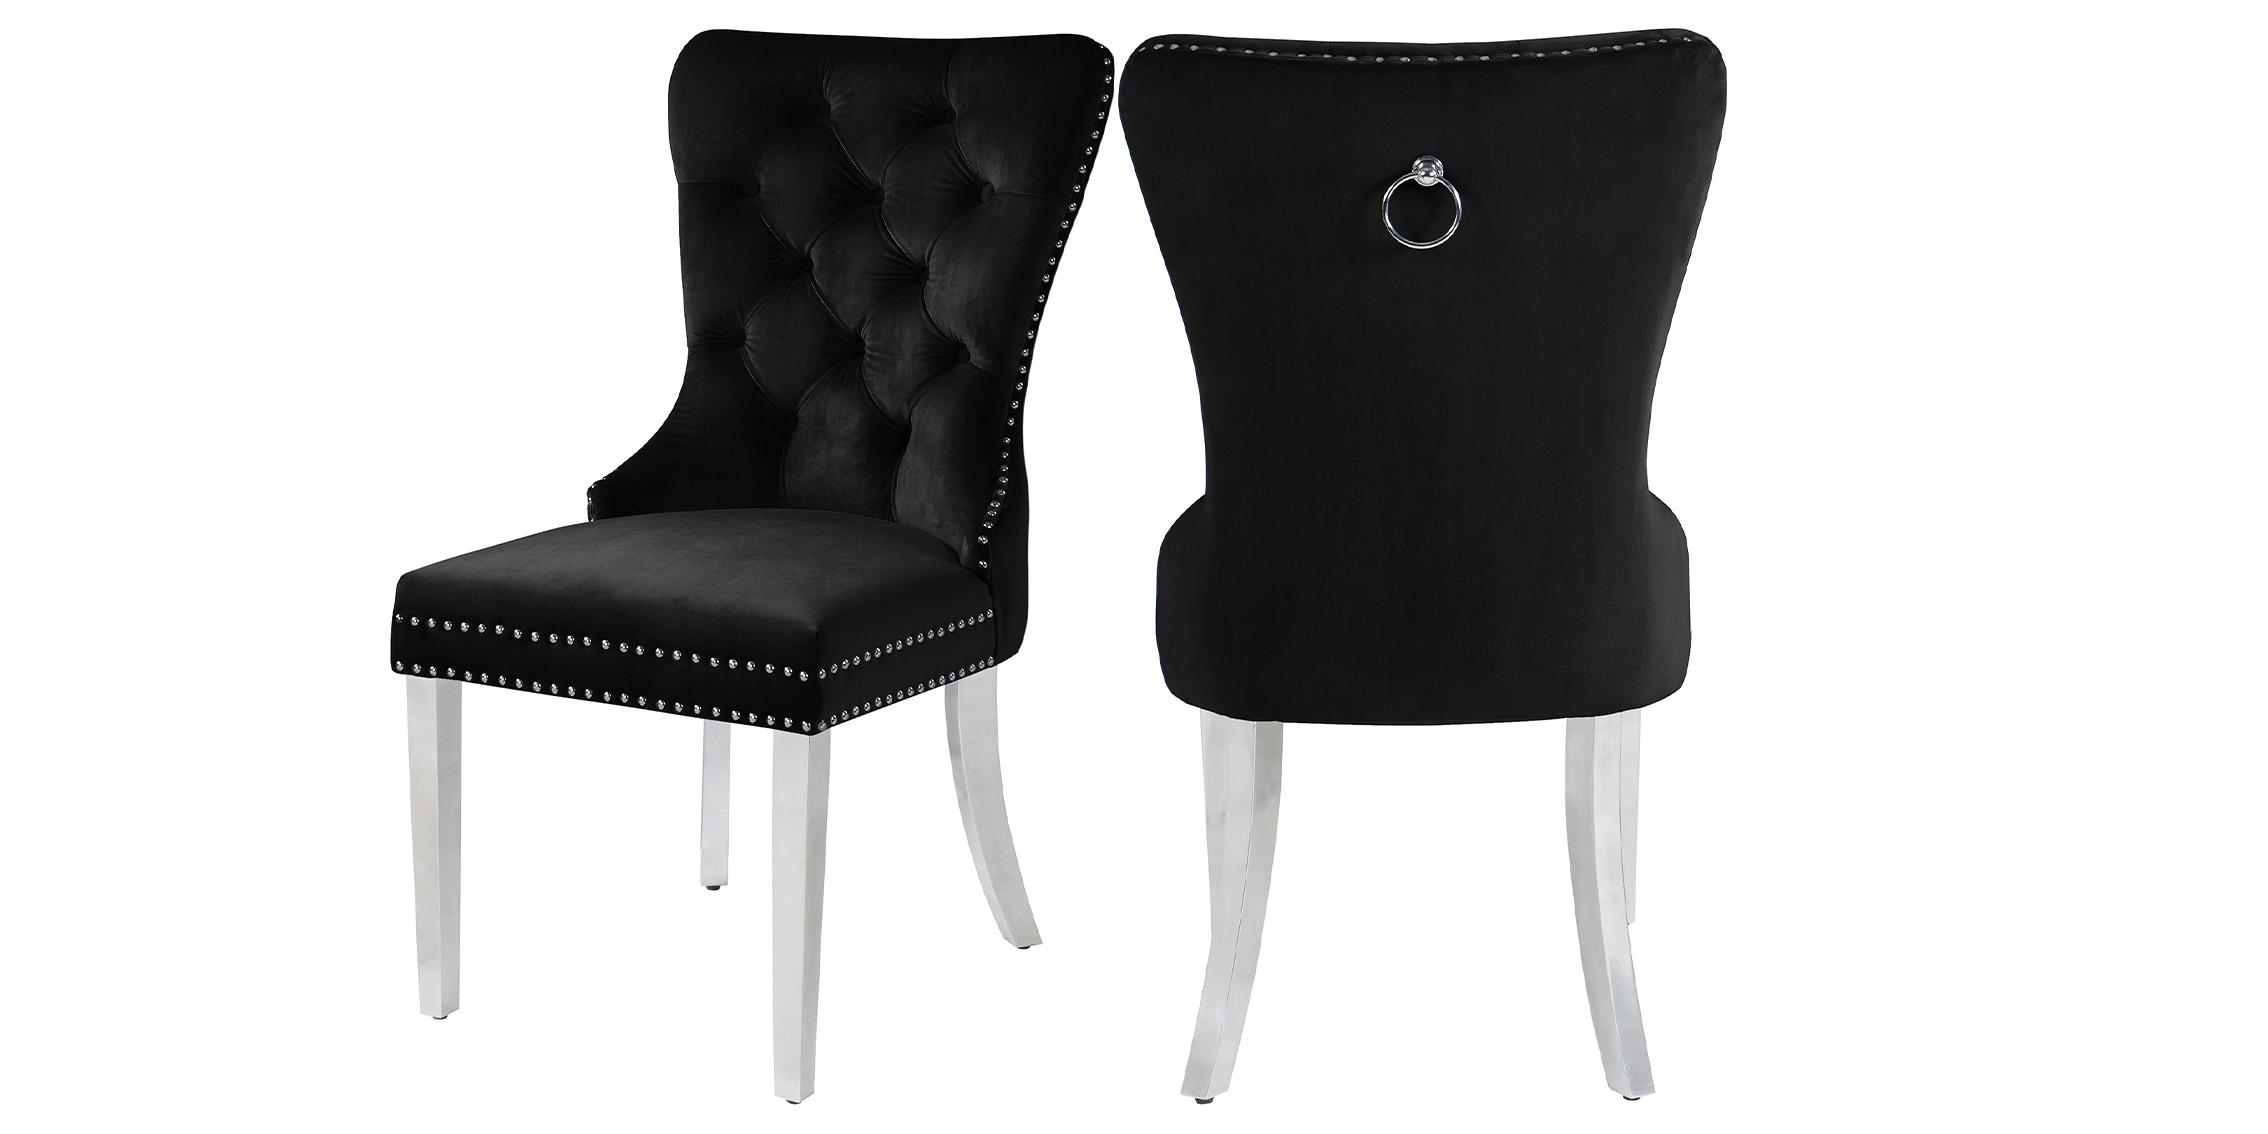 Classic Dining Chair Set Carmen 743Black-C 743Black-C-Set-2 in Black Velvet